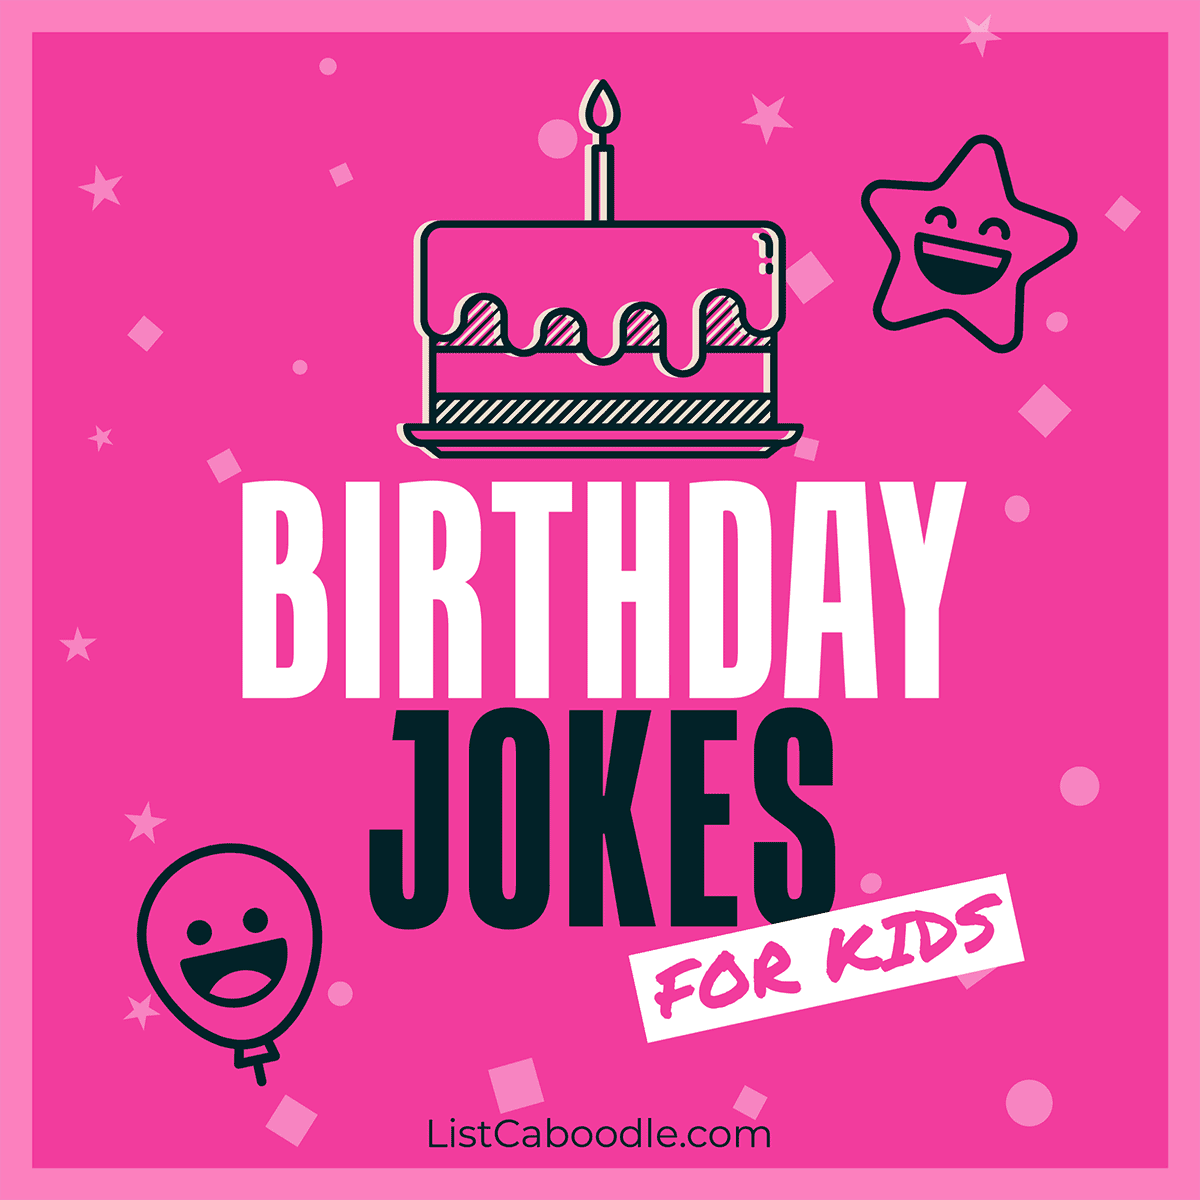 birthday jokes for kids